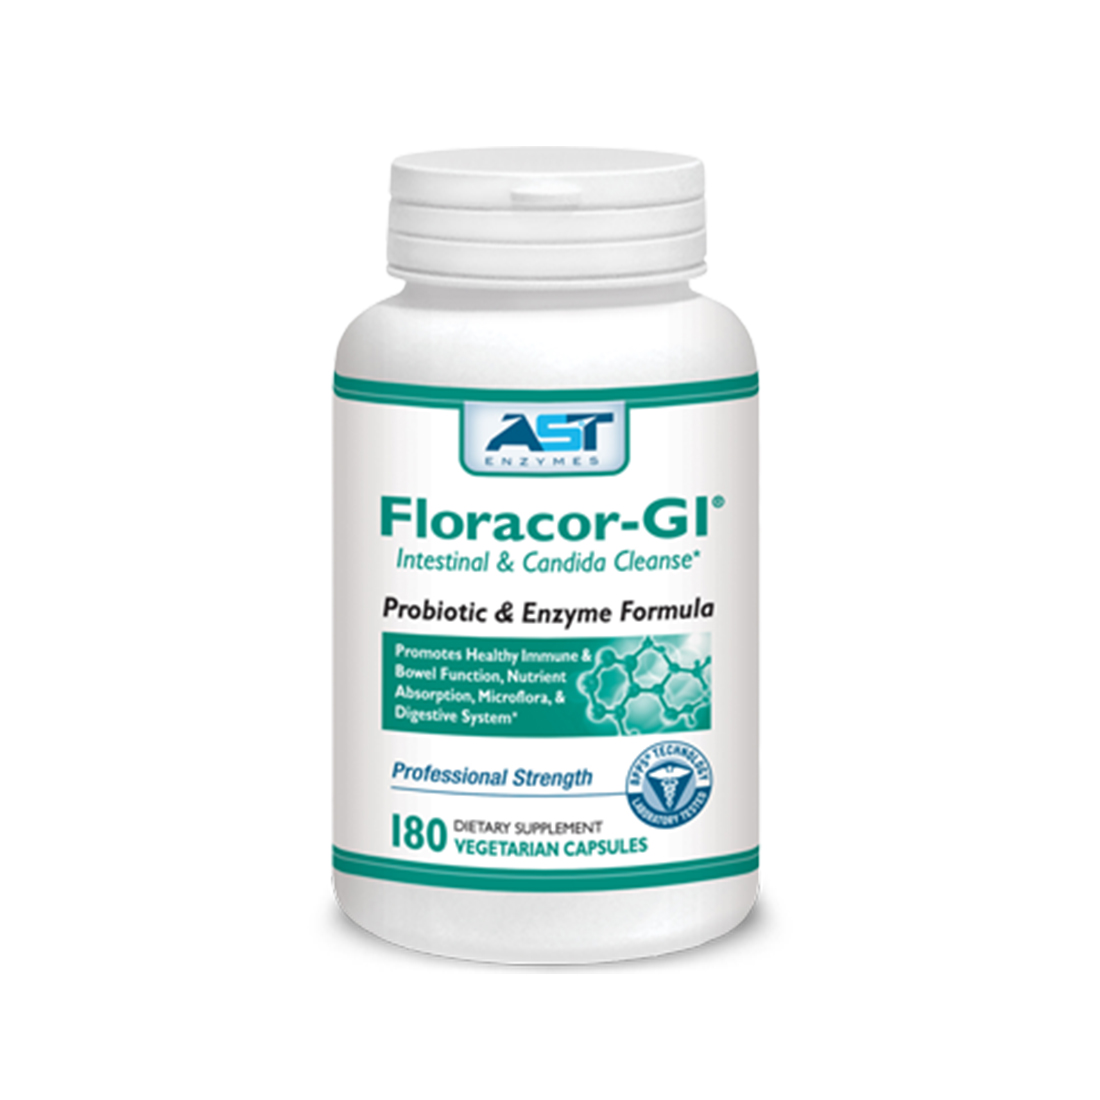 Floracor-GI 180 tobolek - probiotika